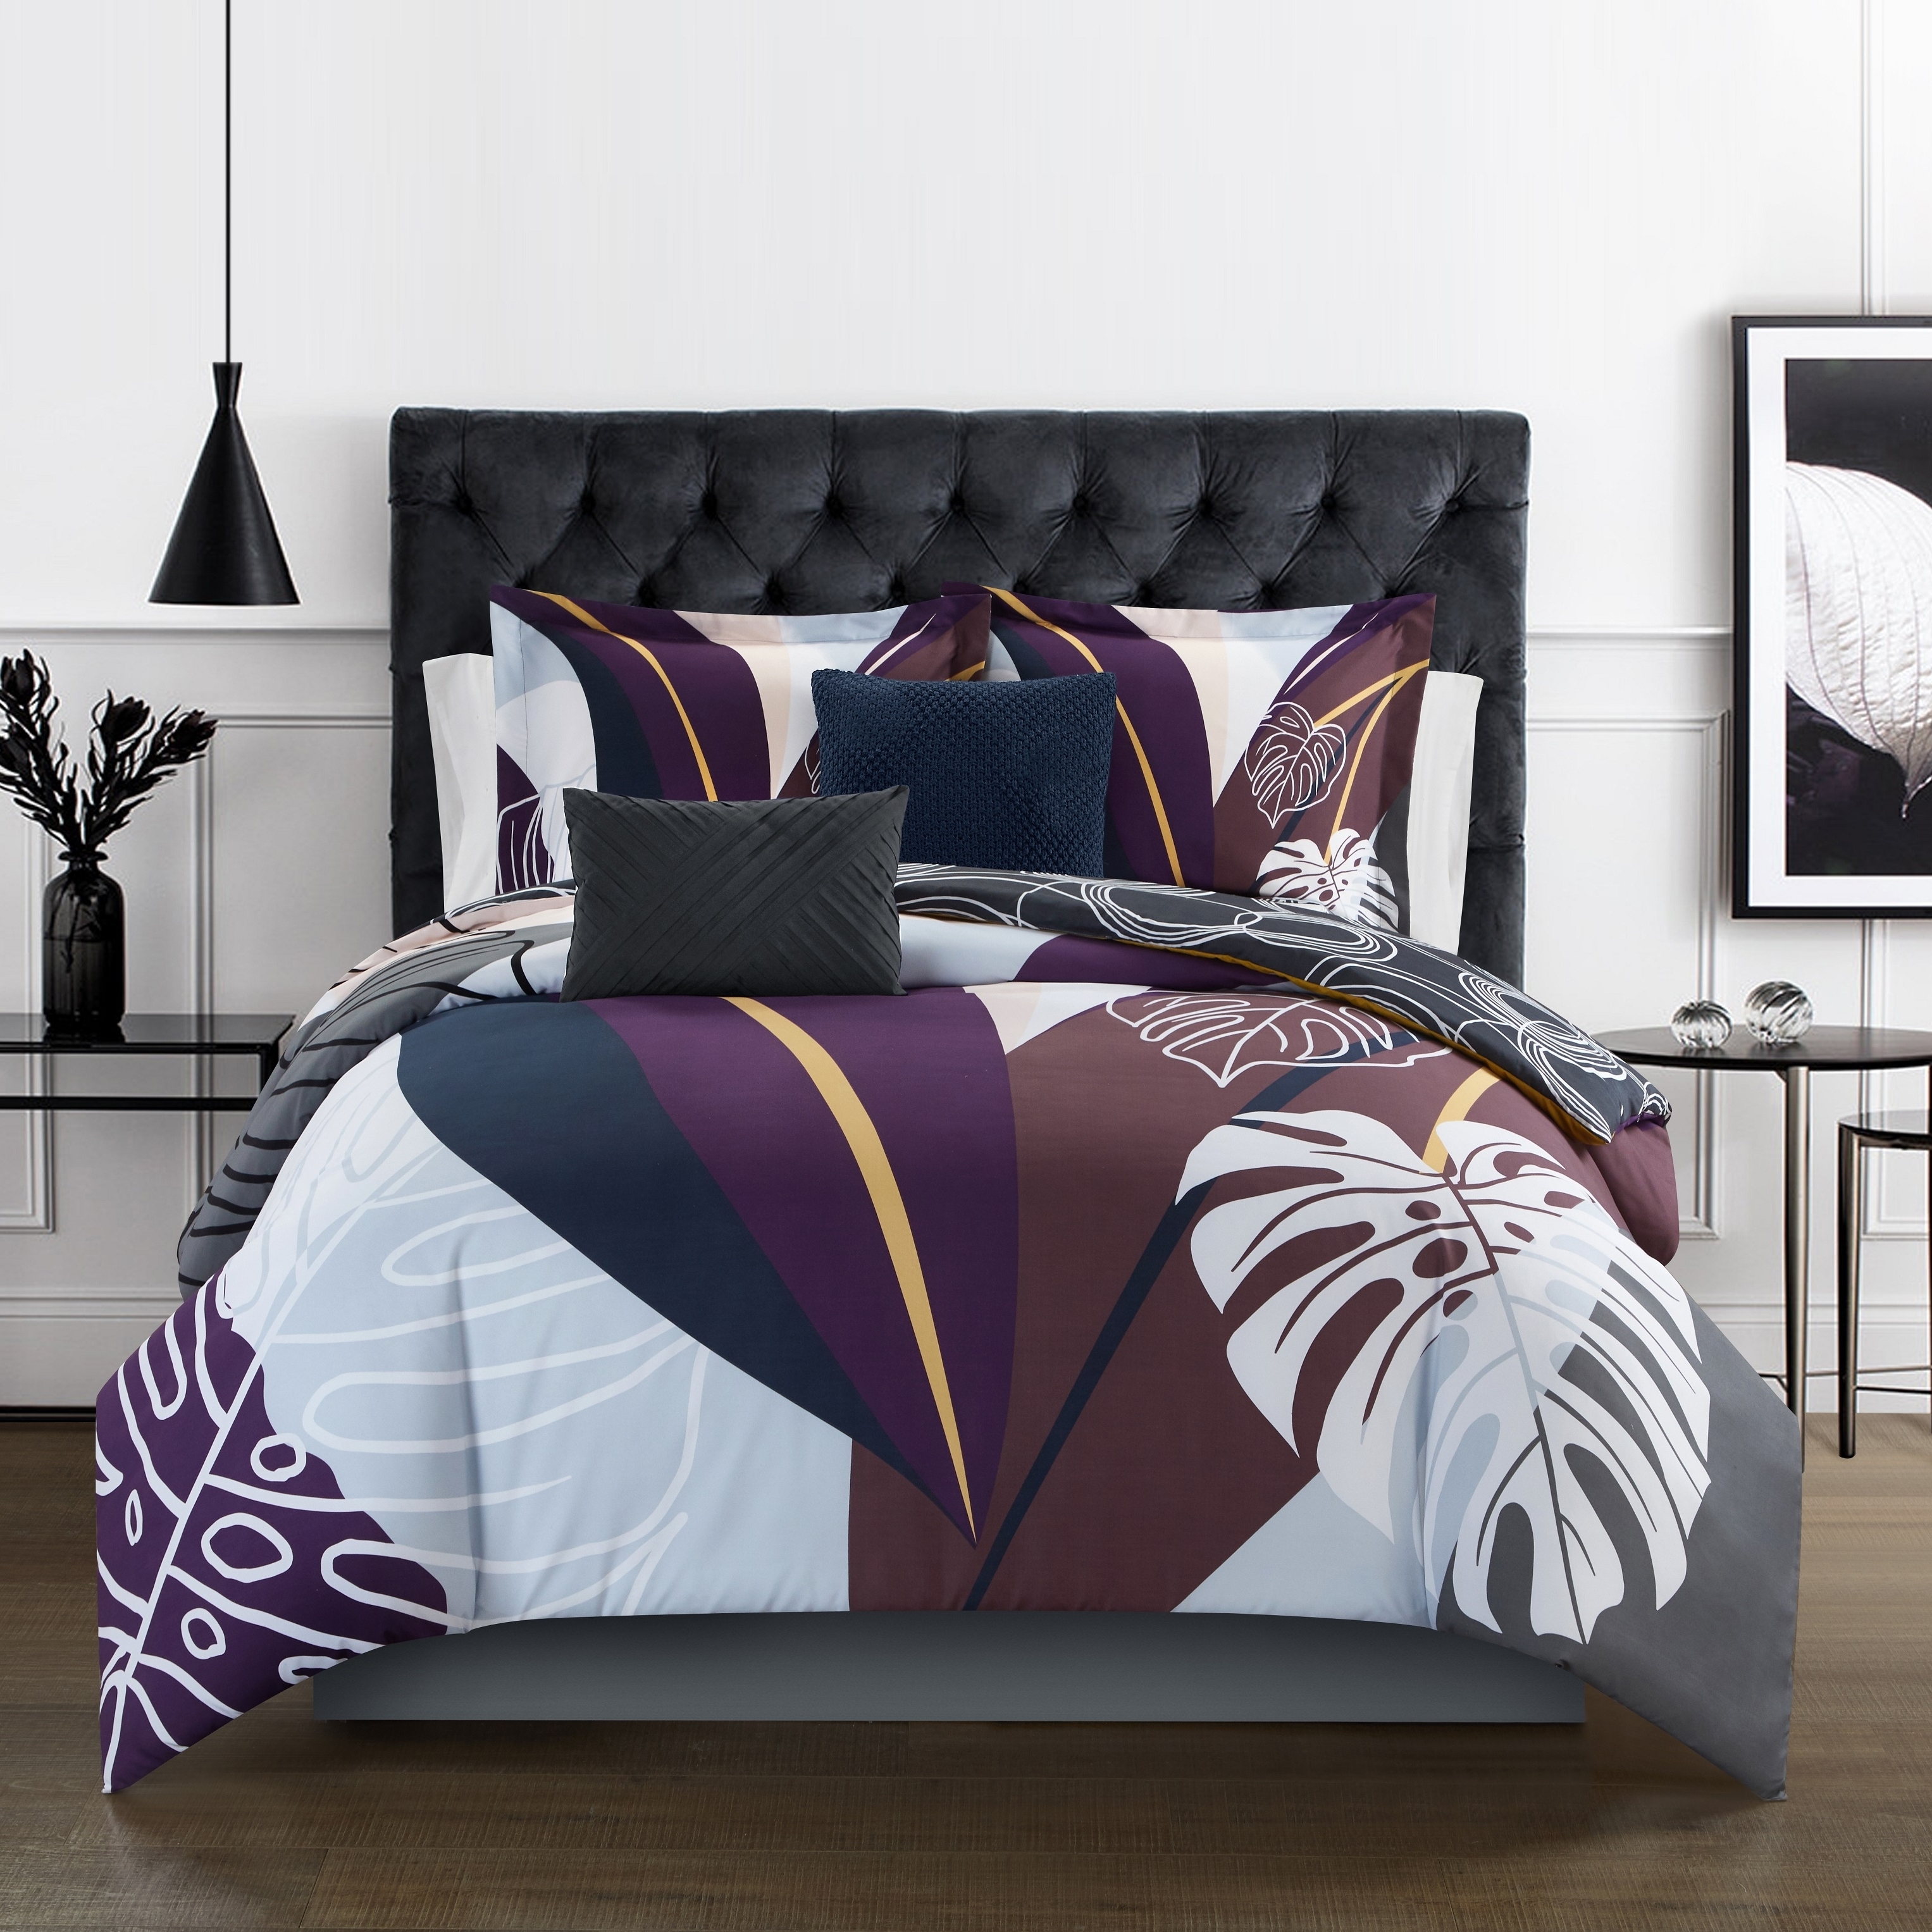 Emeraude 3 Piece Reversible Quilt Set Floral Print Cursive Script Design Bedding - Blue, King